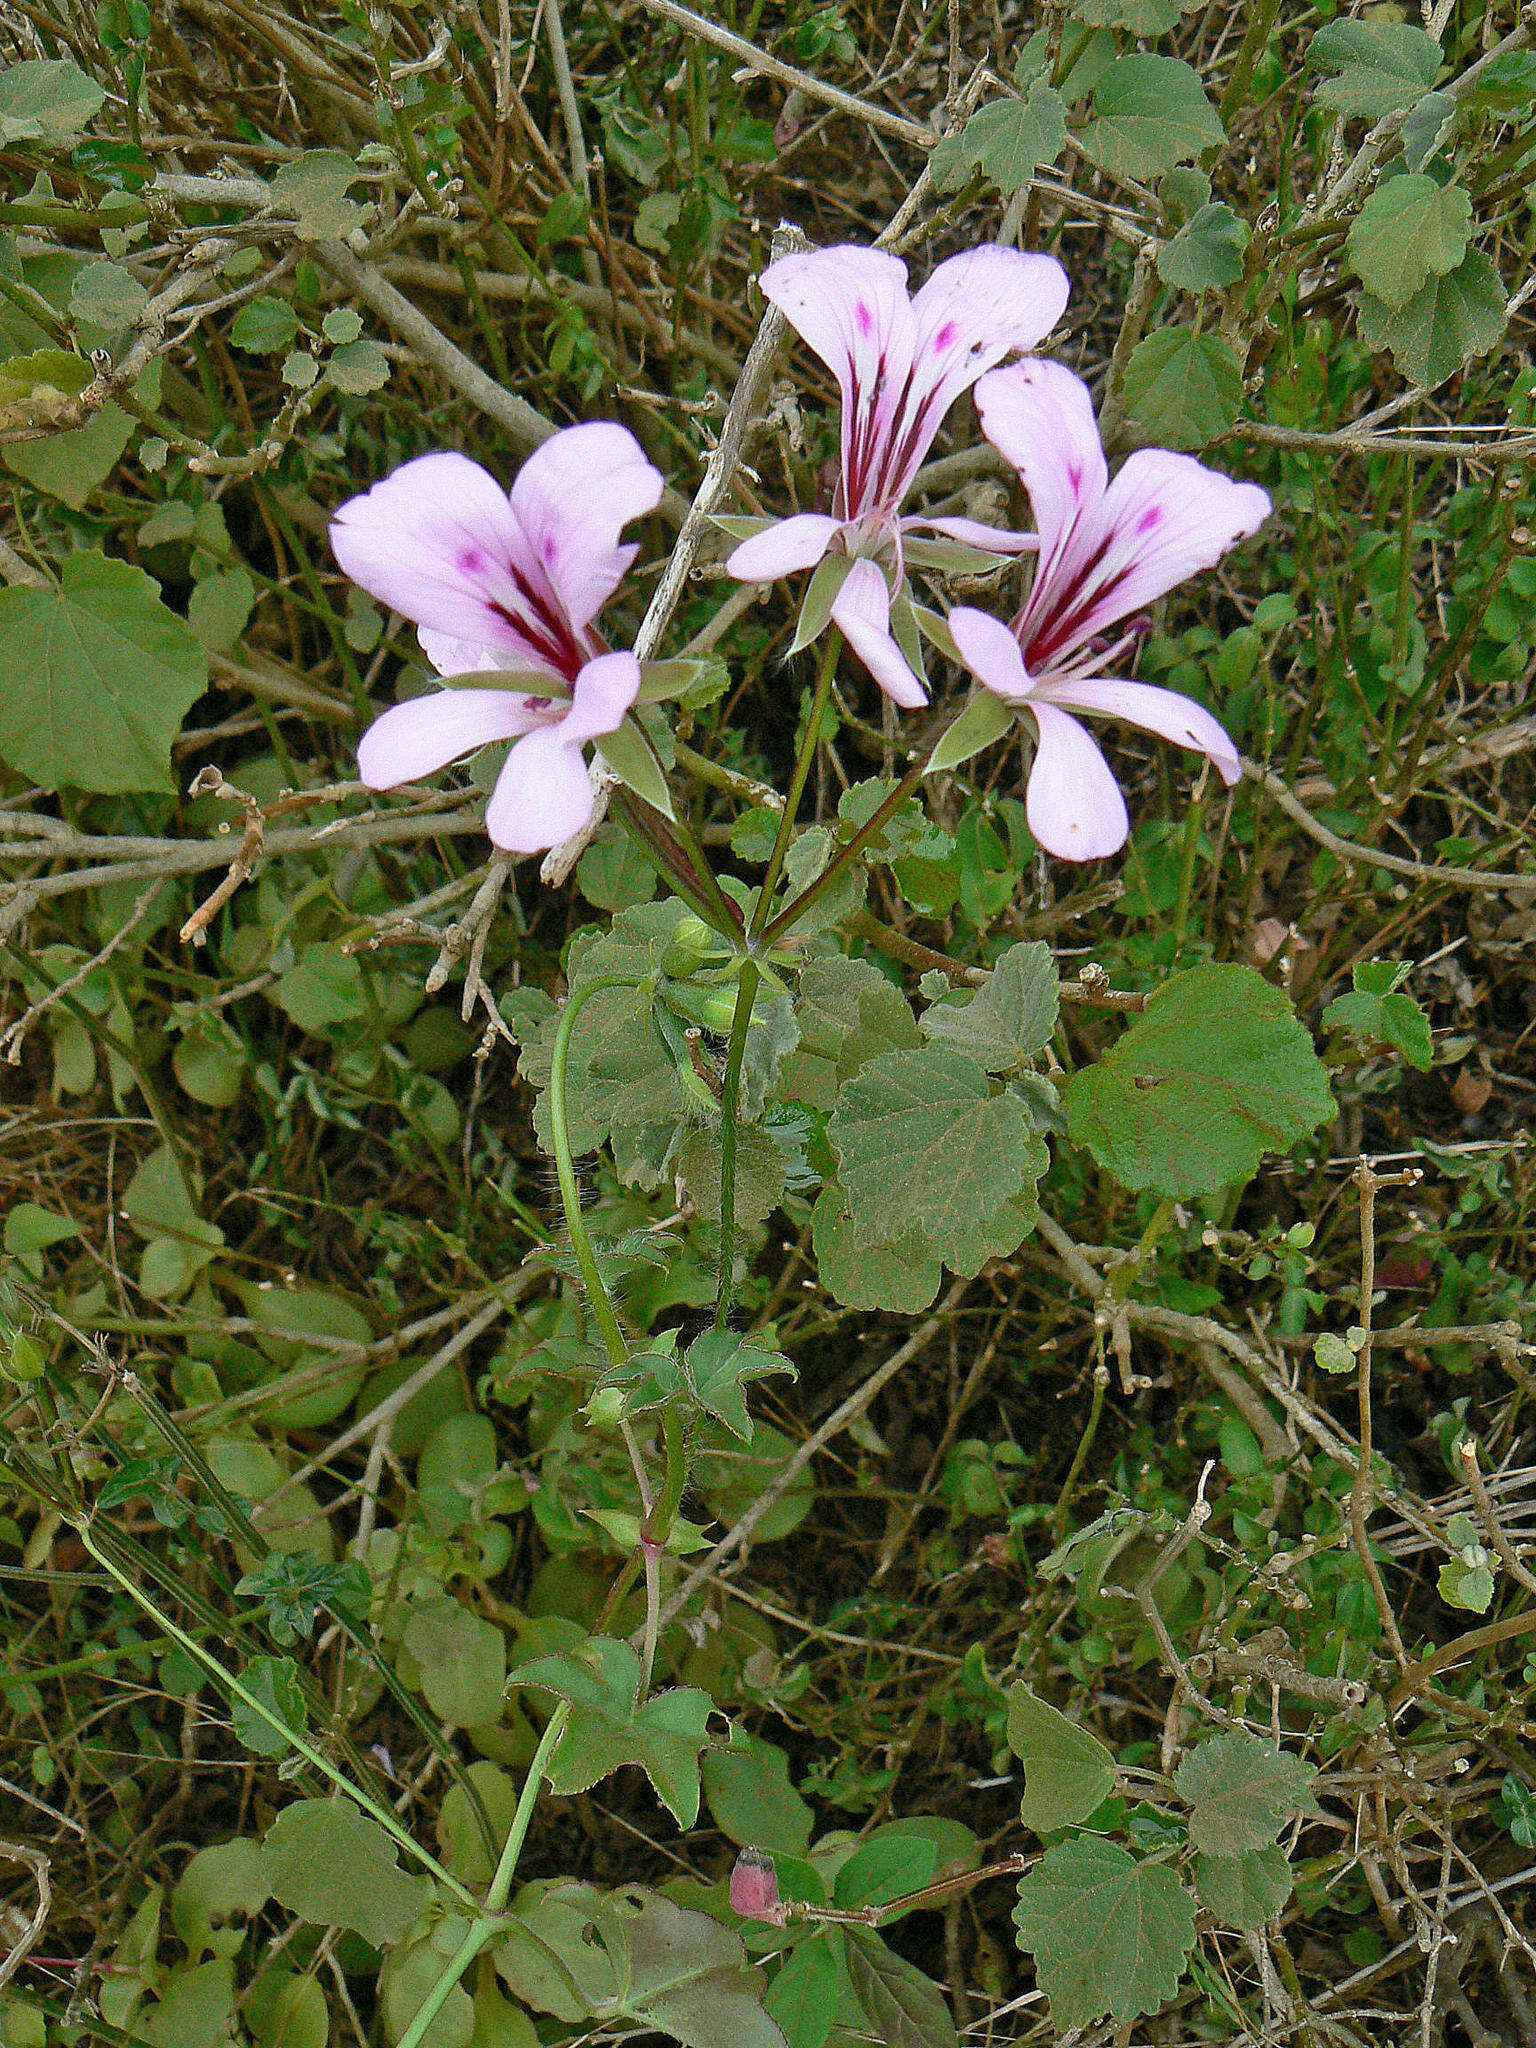 Image of Peltated Geranium